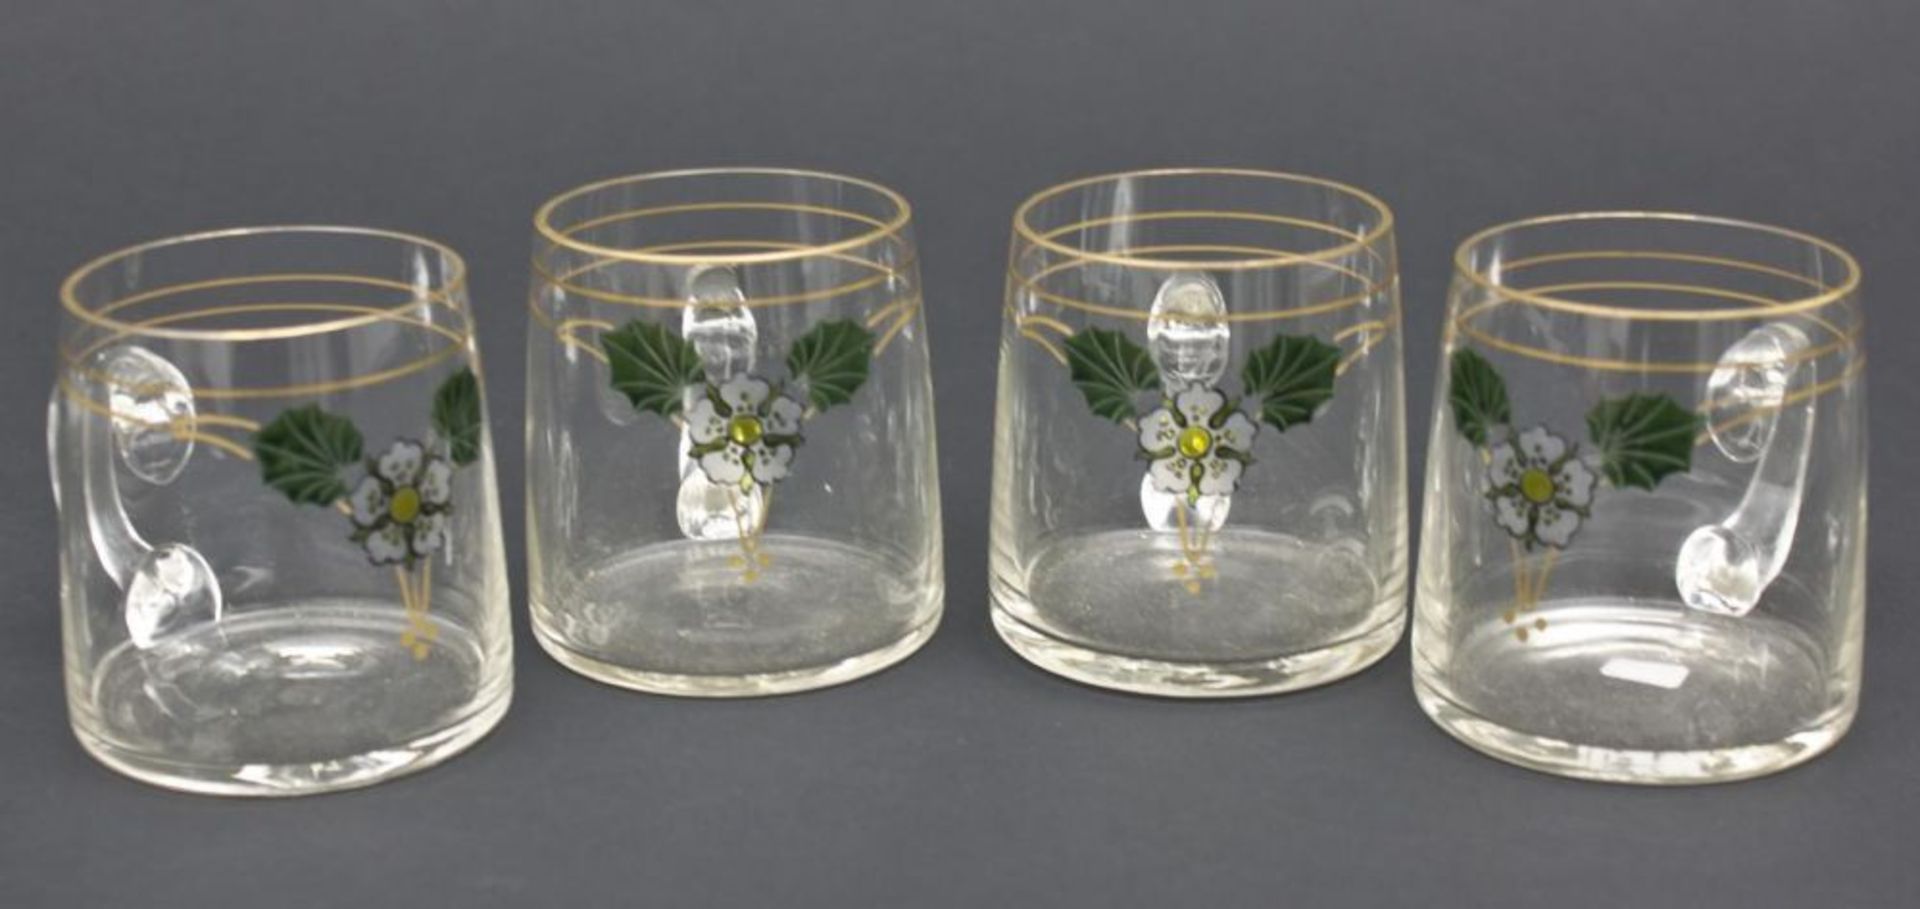 4 Jugendstil-Punschgläser, wohl Theresienthal, um 1900  Henkelbecher aus farblosem Glas, mit